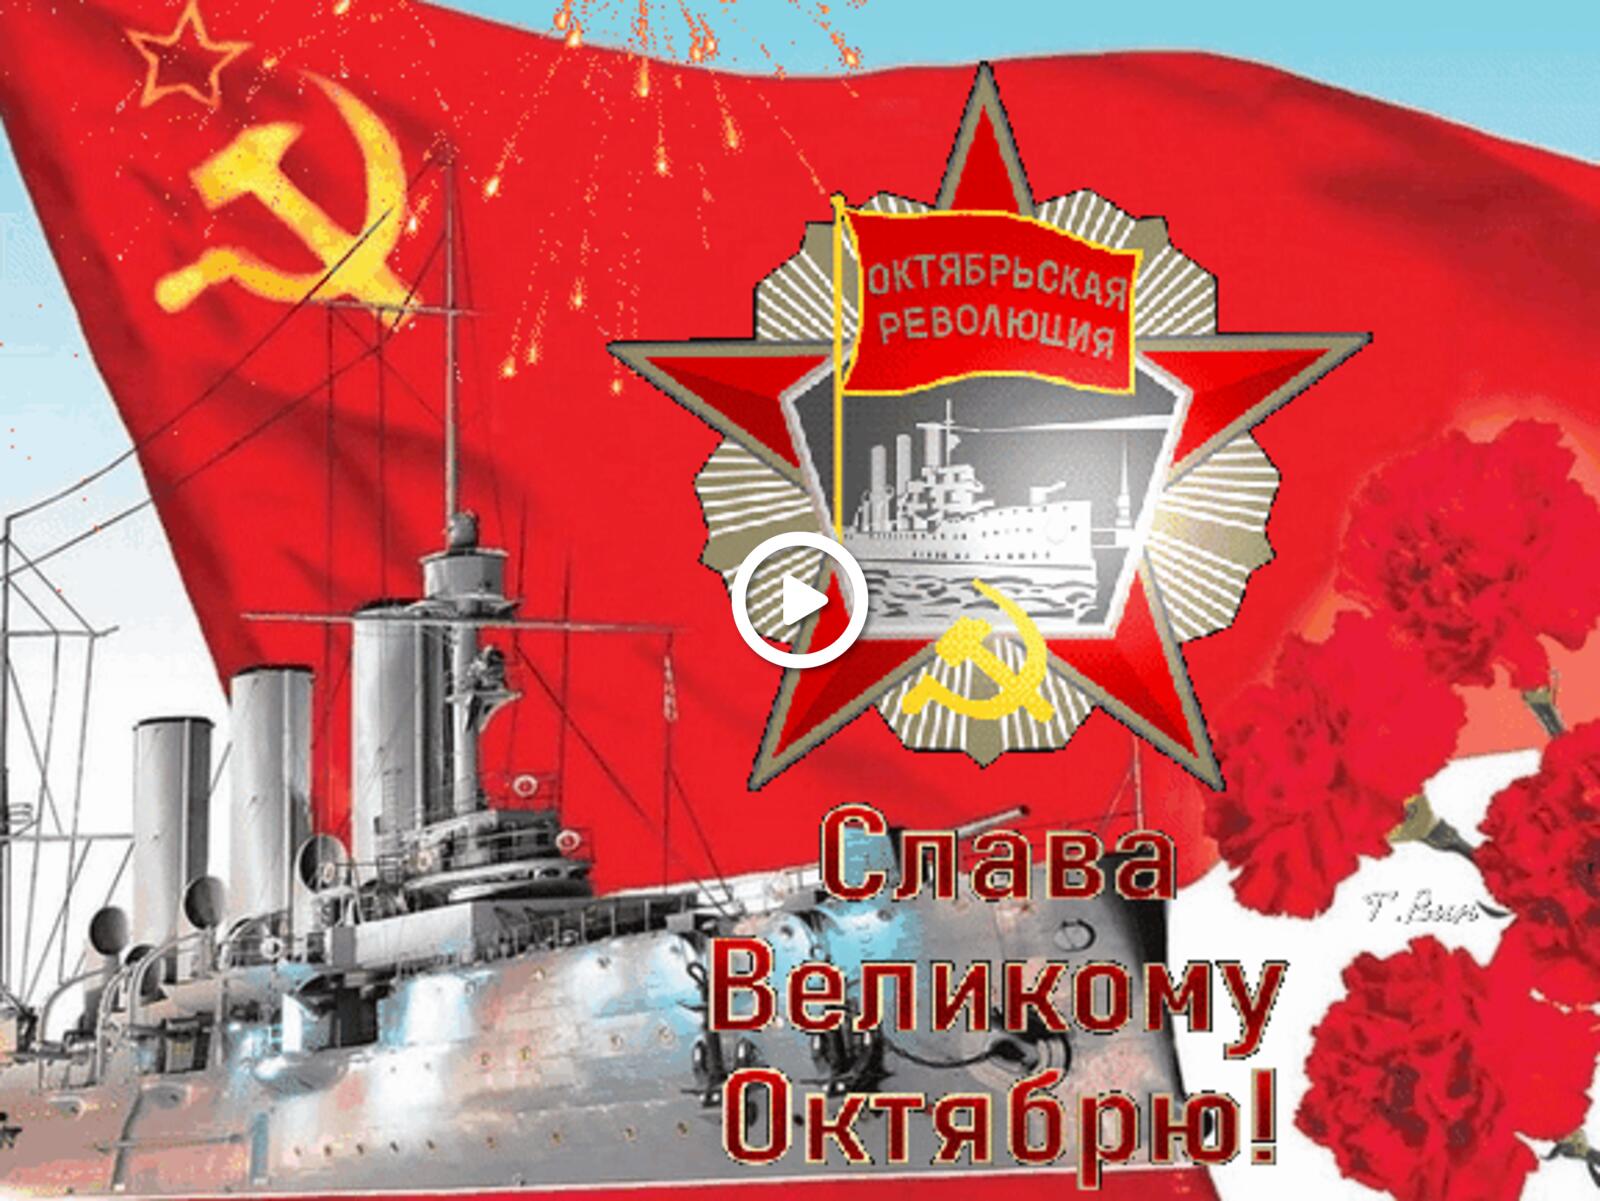 一张以十月革命节 国旗 苏联为主题的明信片